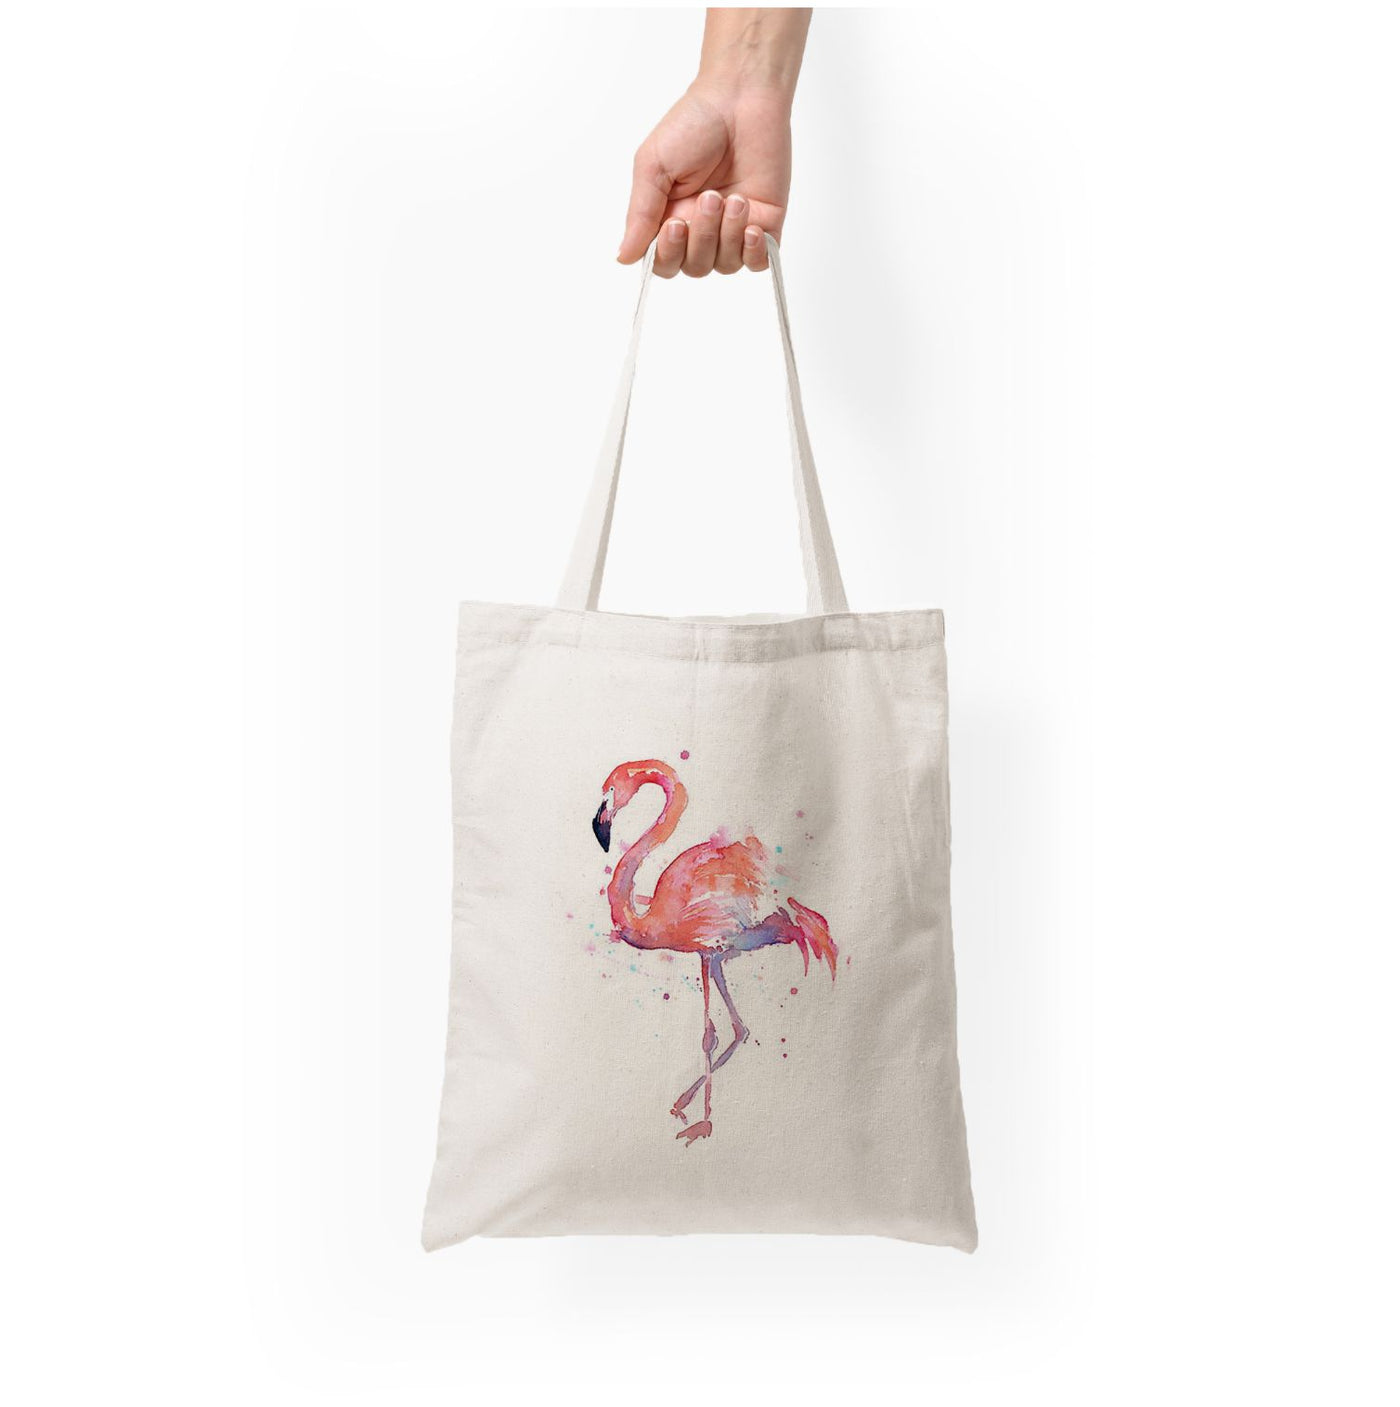 Watercolour Flamingo Painting Tote Bag